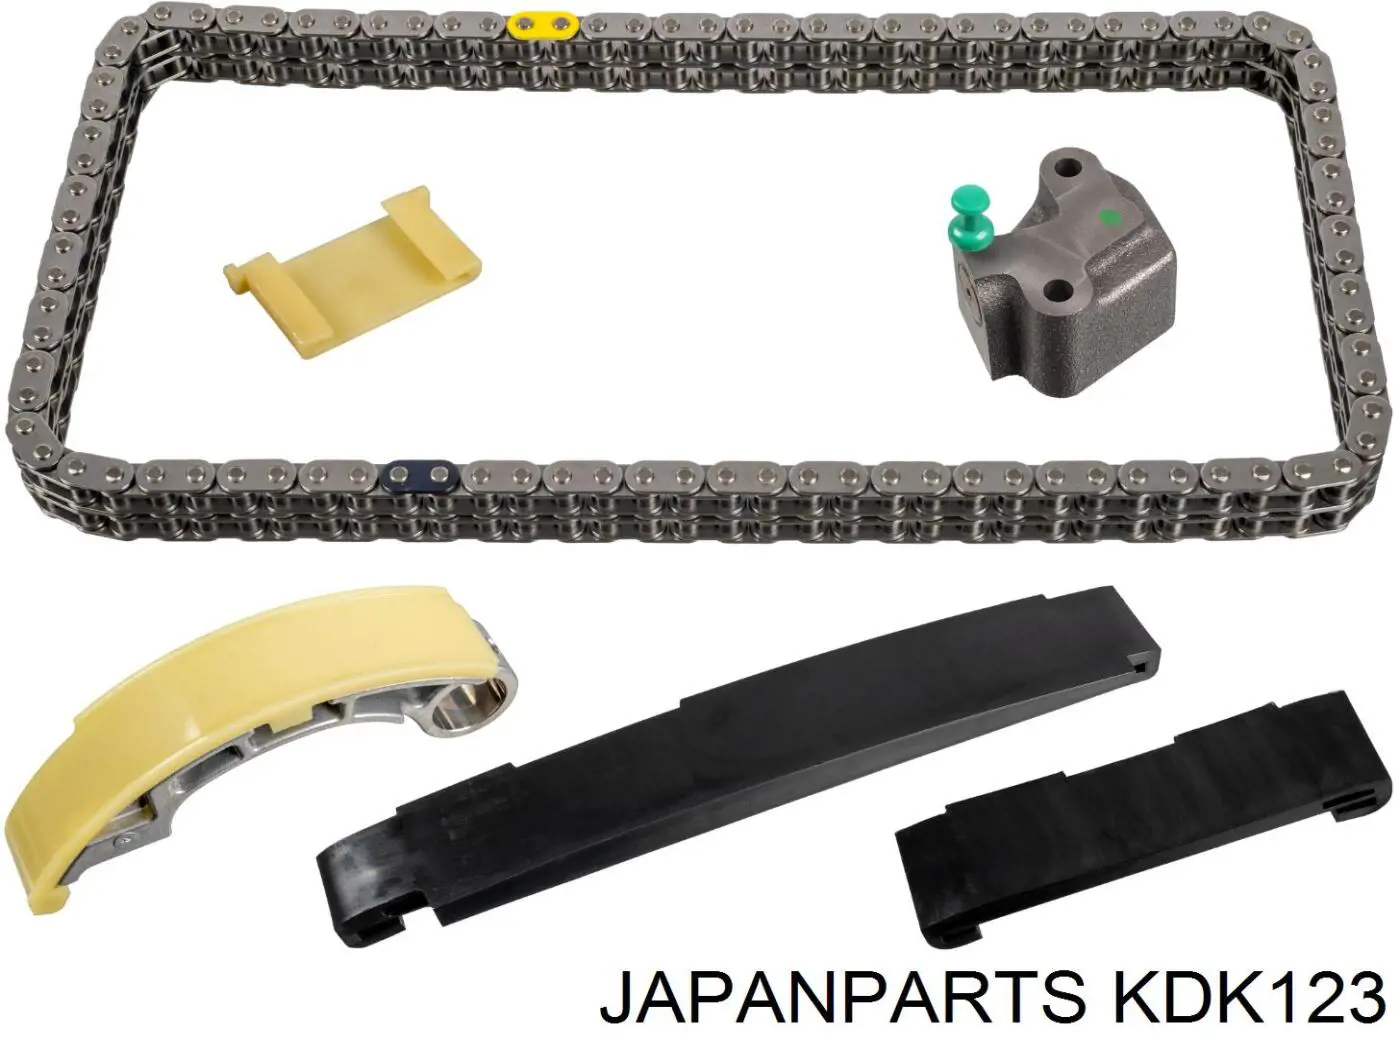 KDK-123 Japan Parts cadeia do mecanismo de distribuição de gás, kit